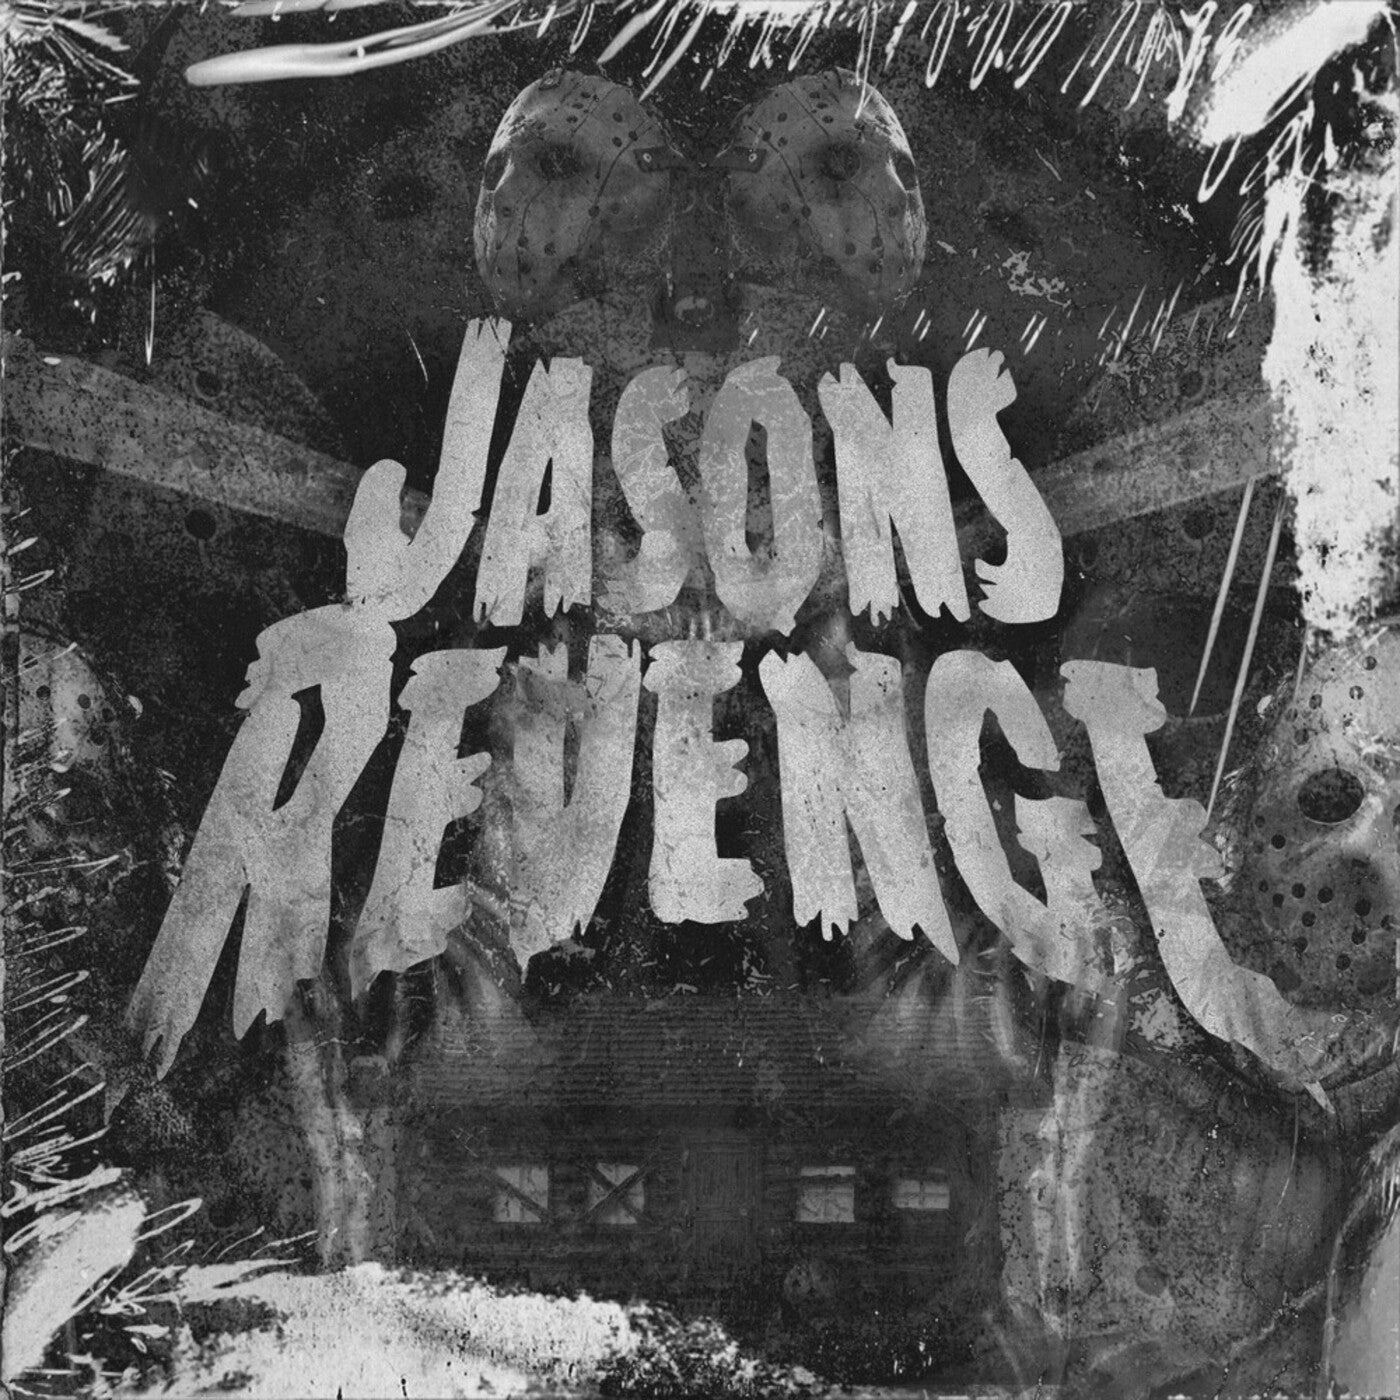 Jasons Revenge